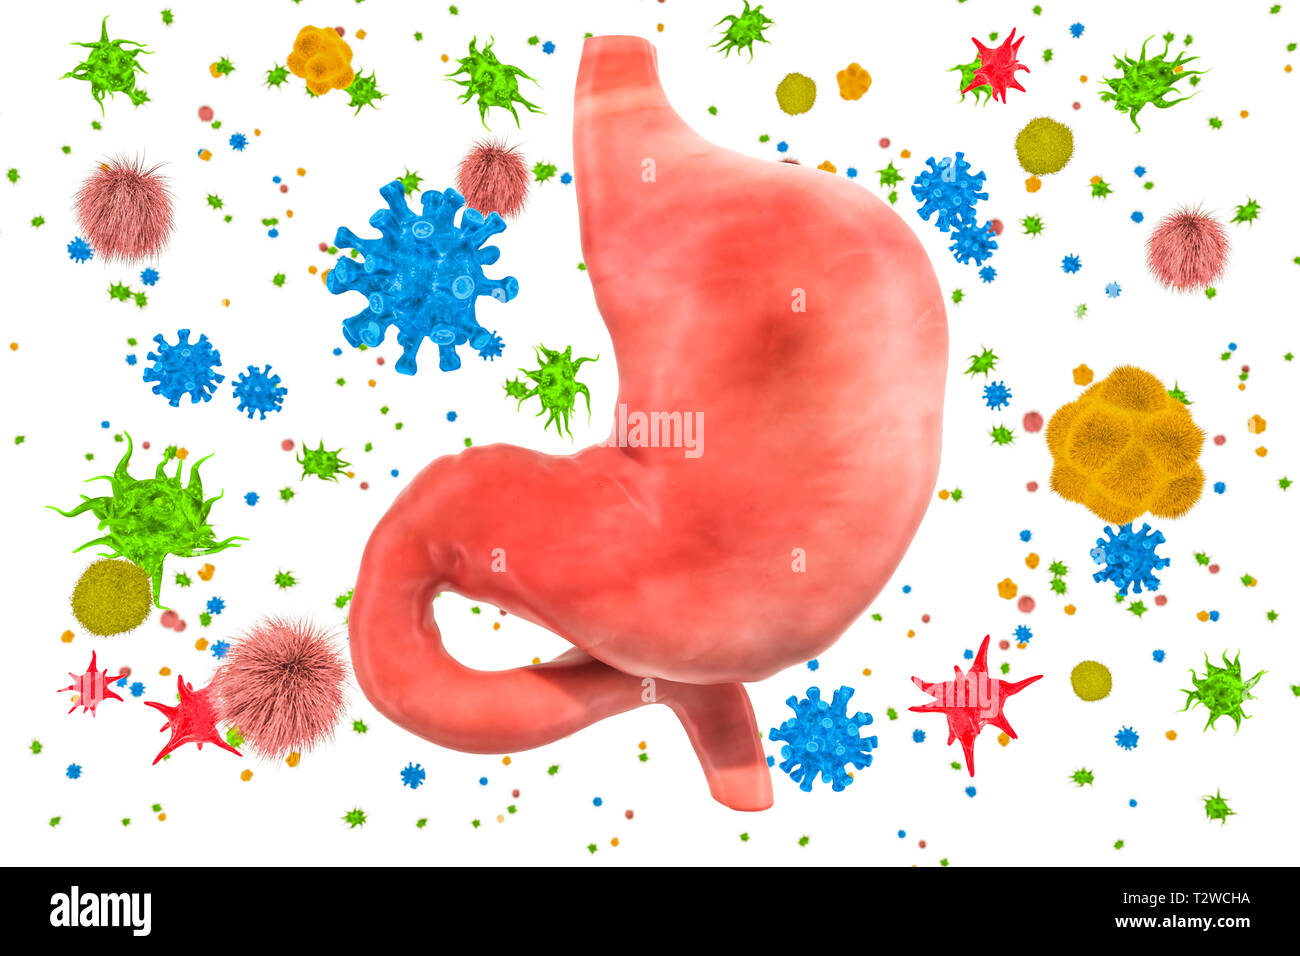 Estomac avec les virus et bactéries. Concept de maladie de l'estomac, rendu 3D isolé sur fond blanc Banque D'Images